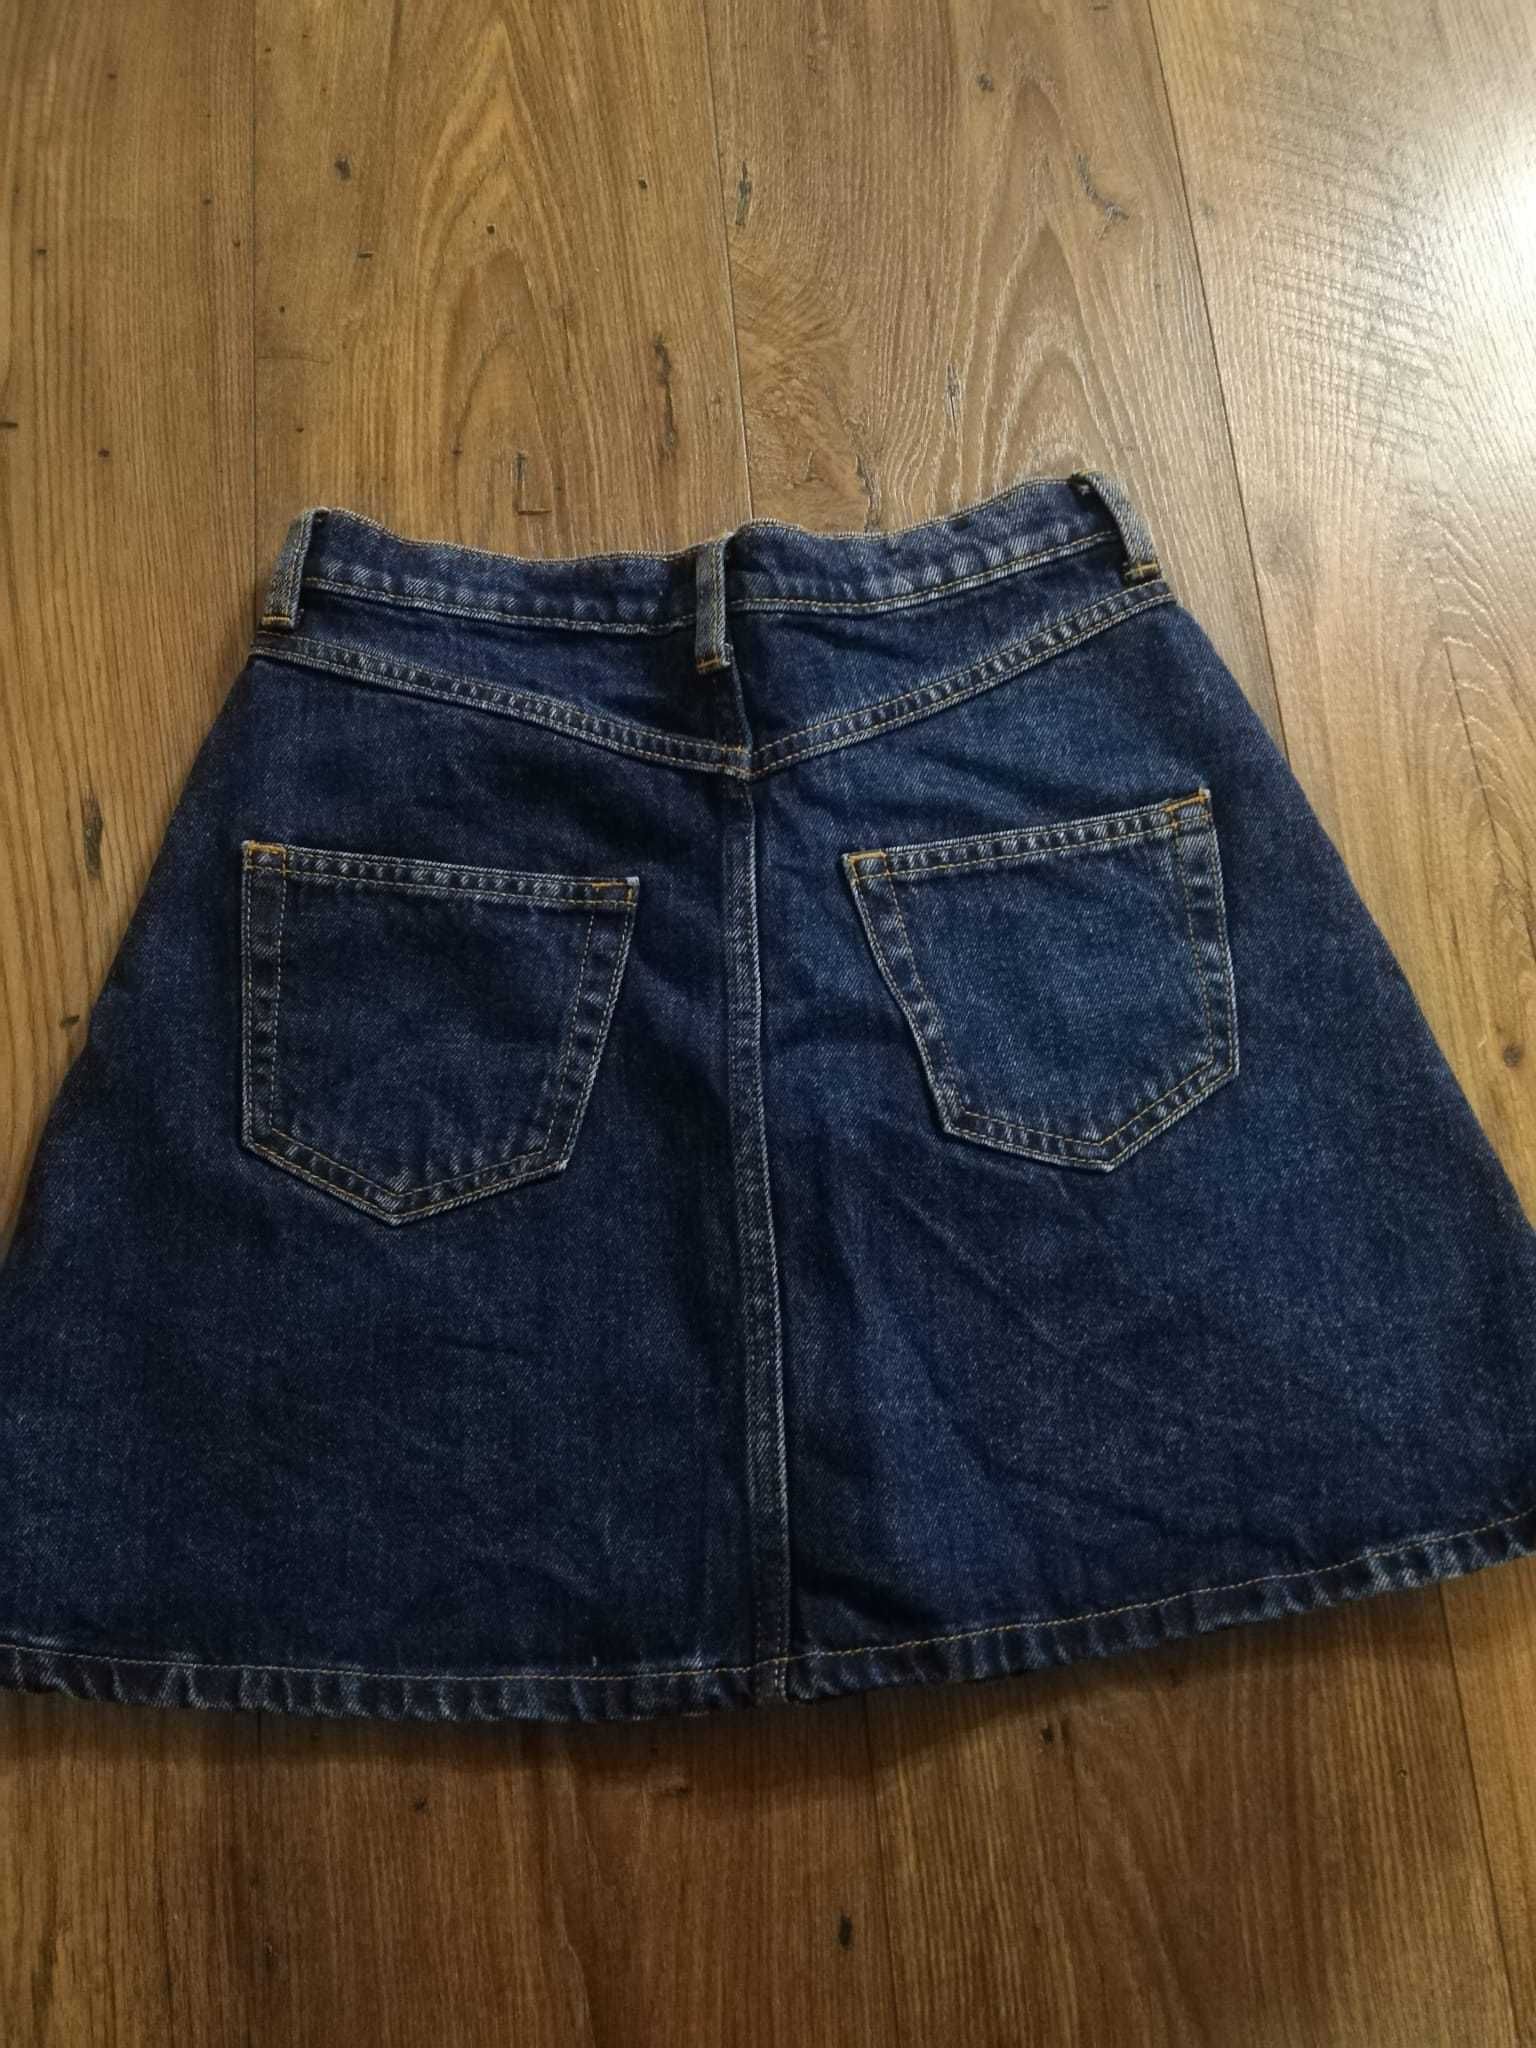 Spódnica spódniczka jeansowa rozmiar 36